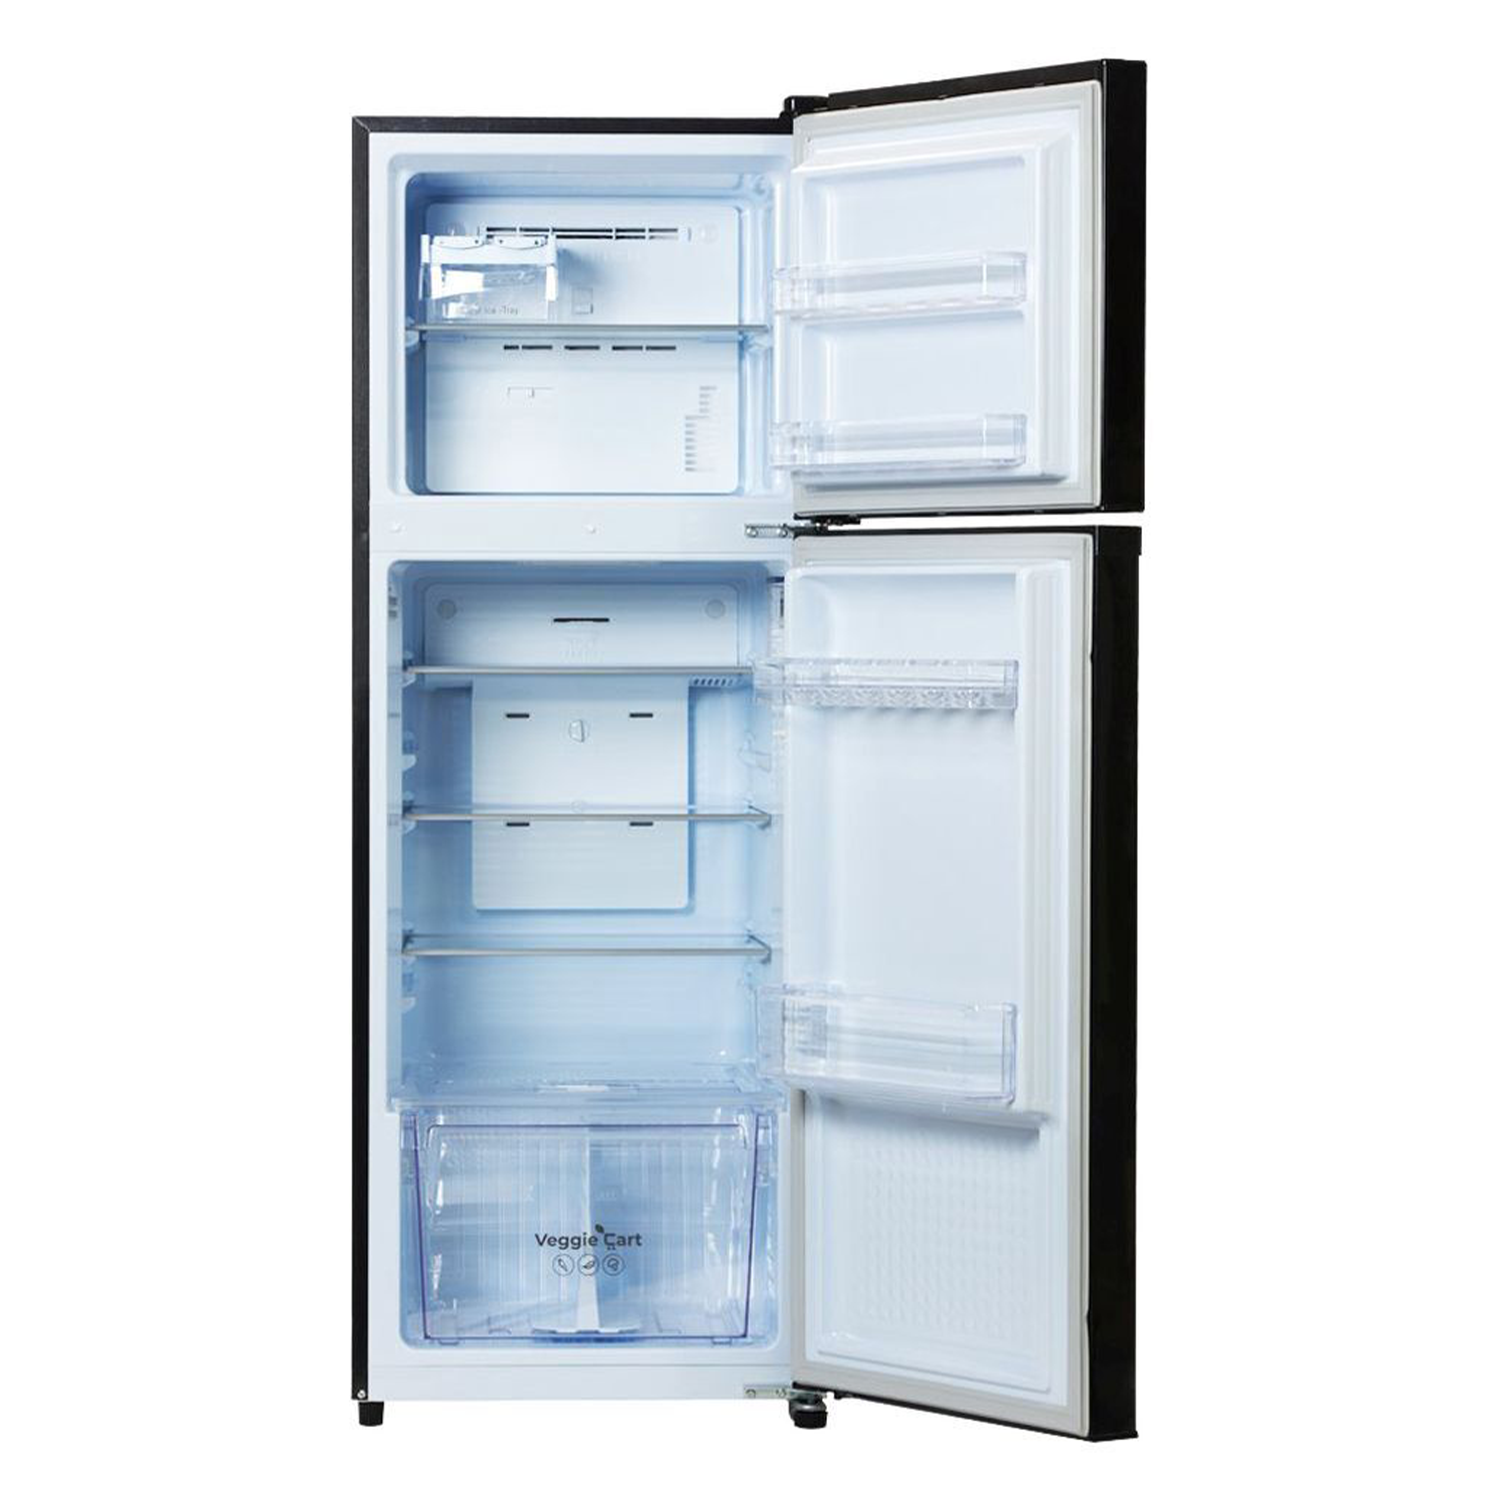 BPL 310 Litre 3 Star Frost Free Double Door Convertible Refrigerator, BRF-G330RCPUKZ (Black)